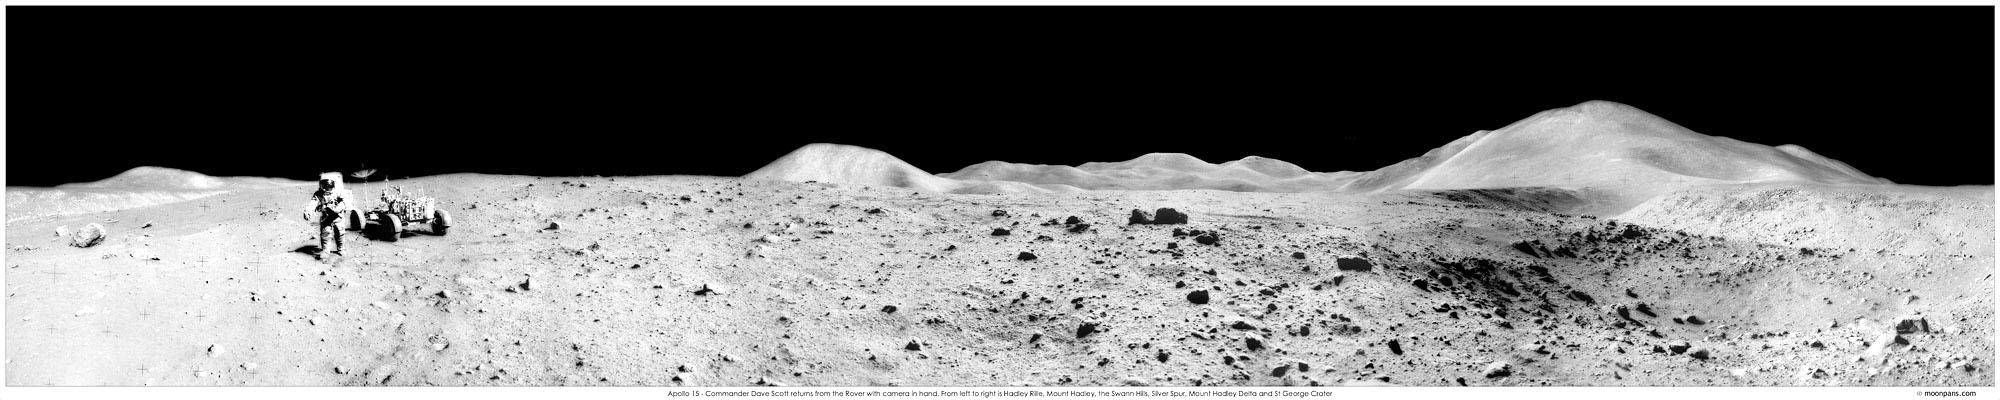 Apollo 15 photo panorama